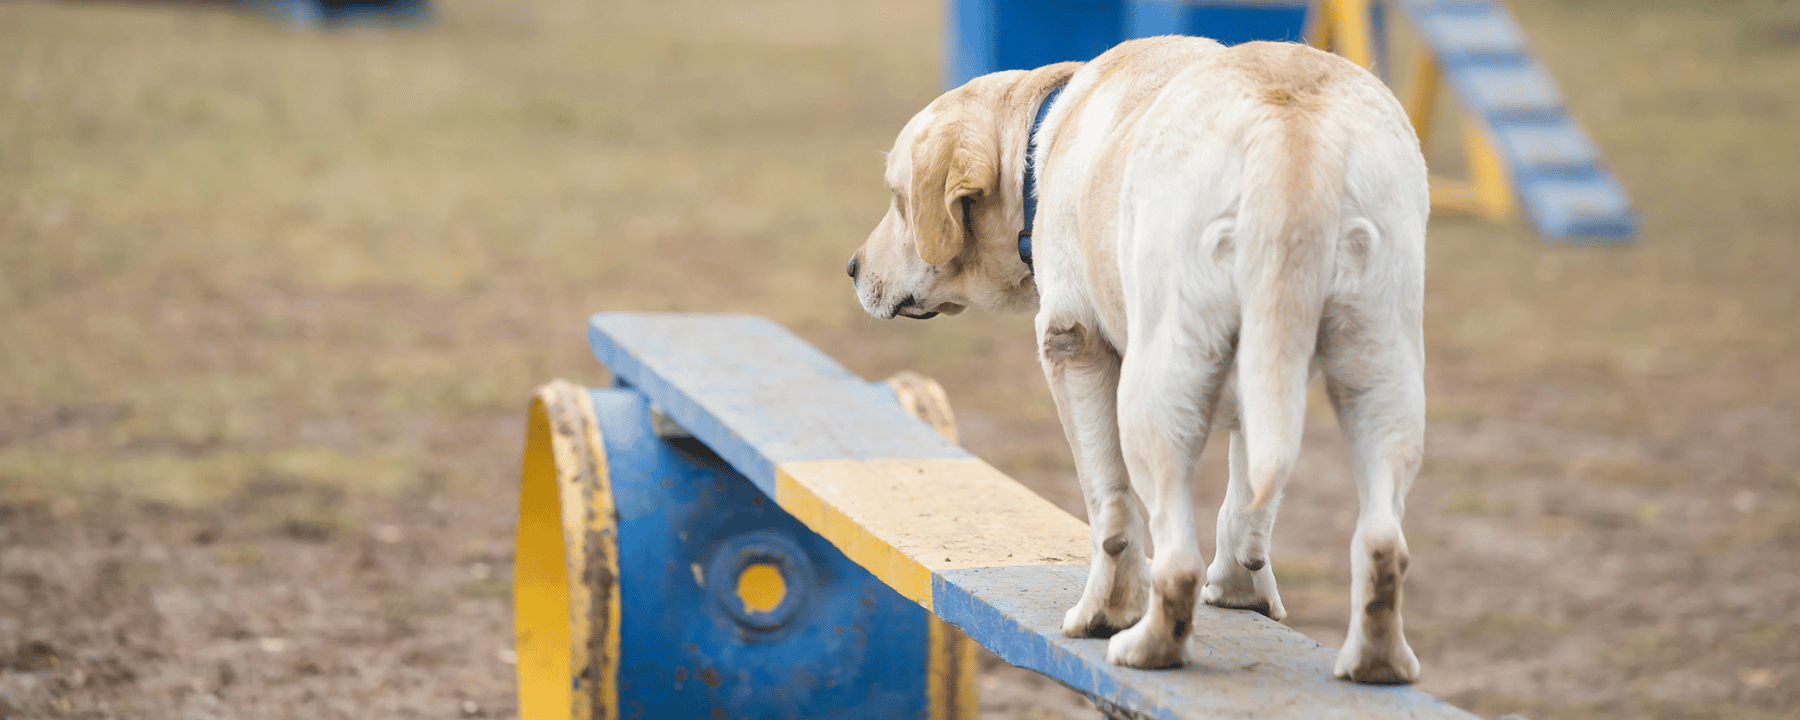 Ein Hund steht auf einem schwebenden Balken